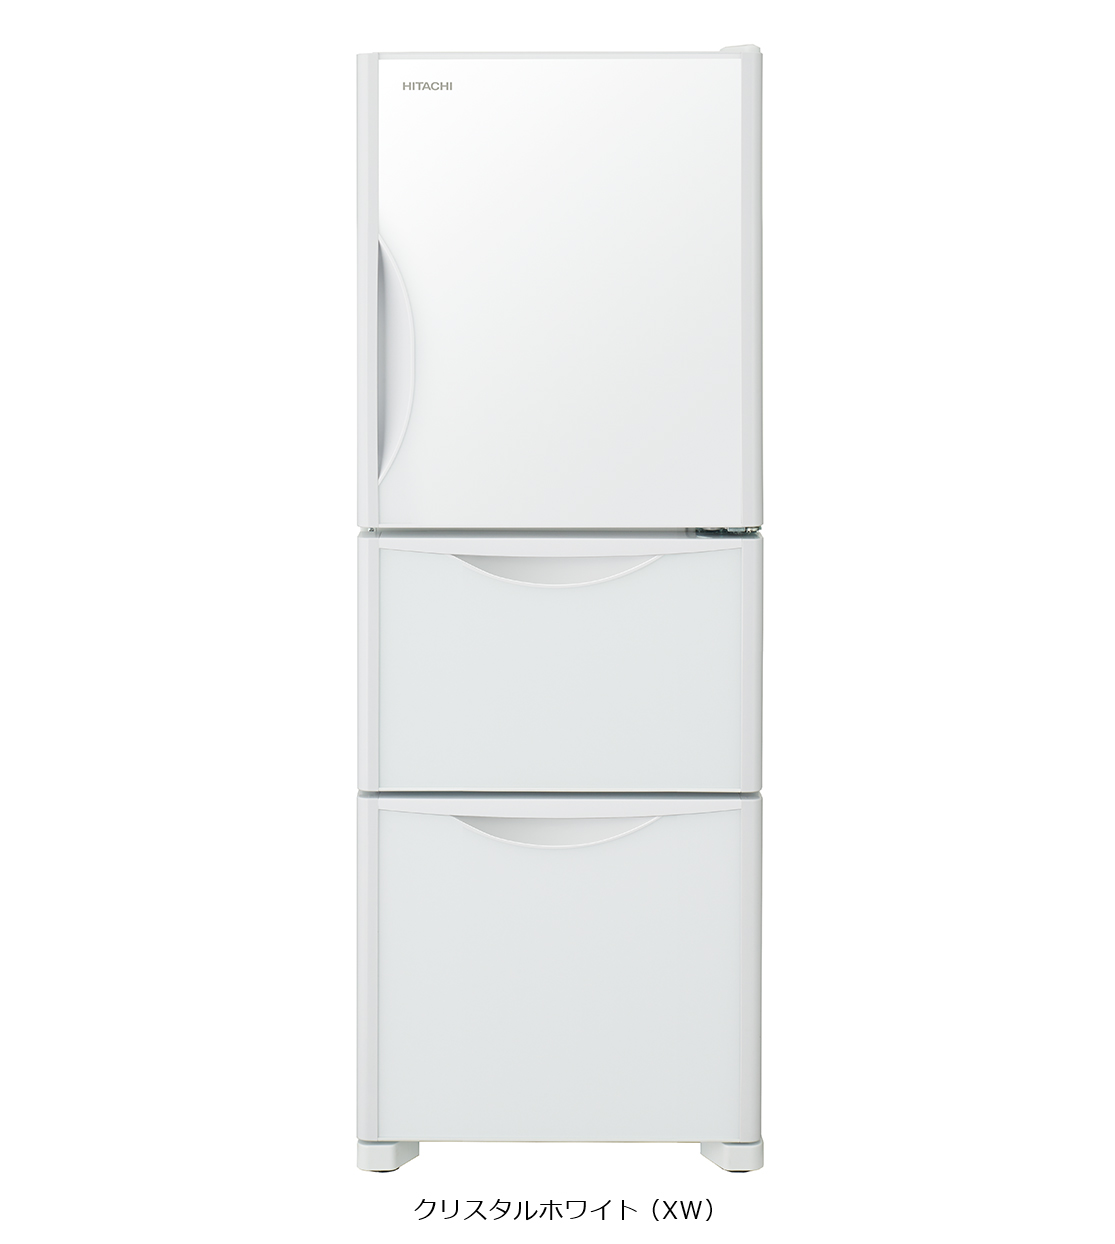 日立 可愛い 265L 冷蔵庫 自動製氷機能付 R-S27YMV - キッチン家電